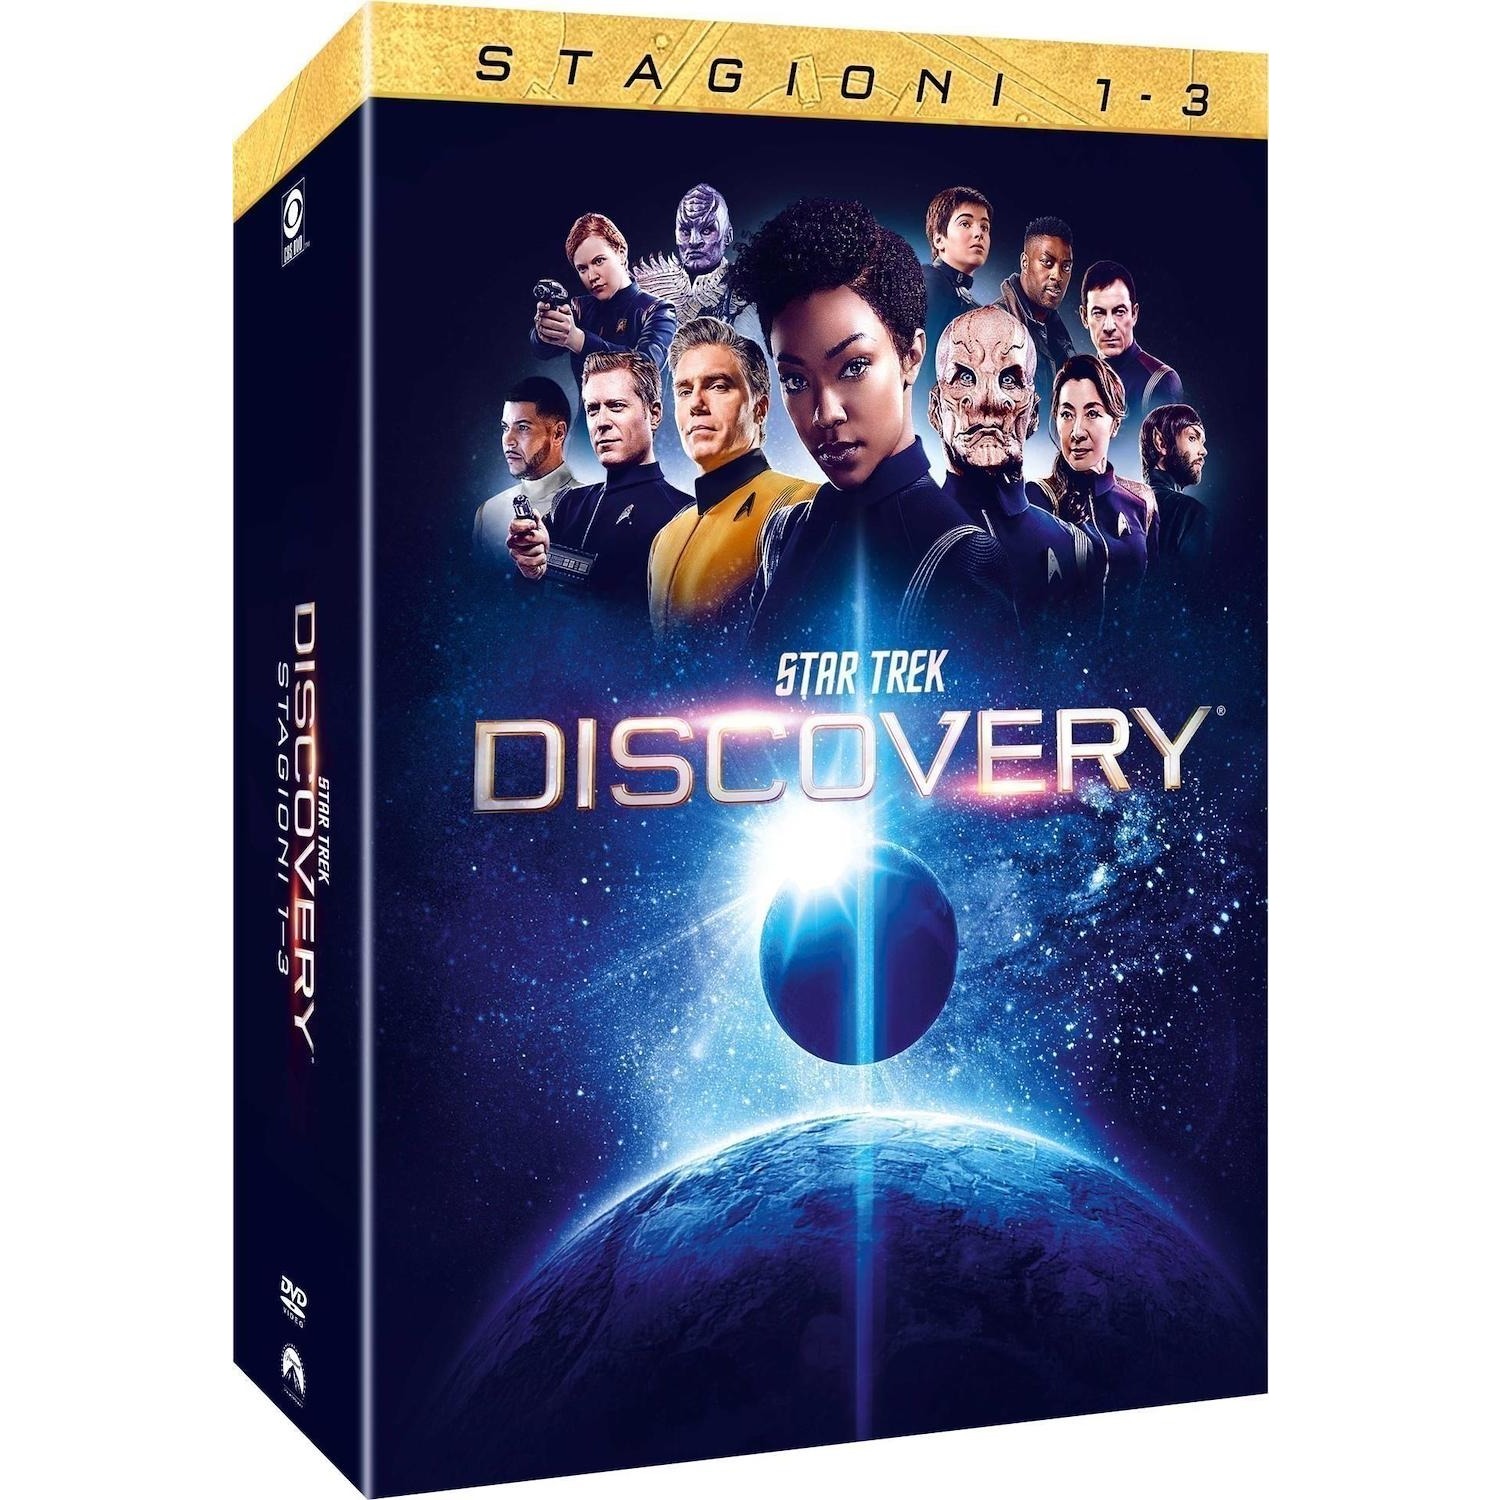 Immagine per Cofanetto DVD Star Trek: Discovery  Stagioni 1-3 da DIMOStore